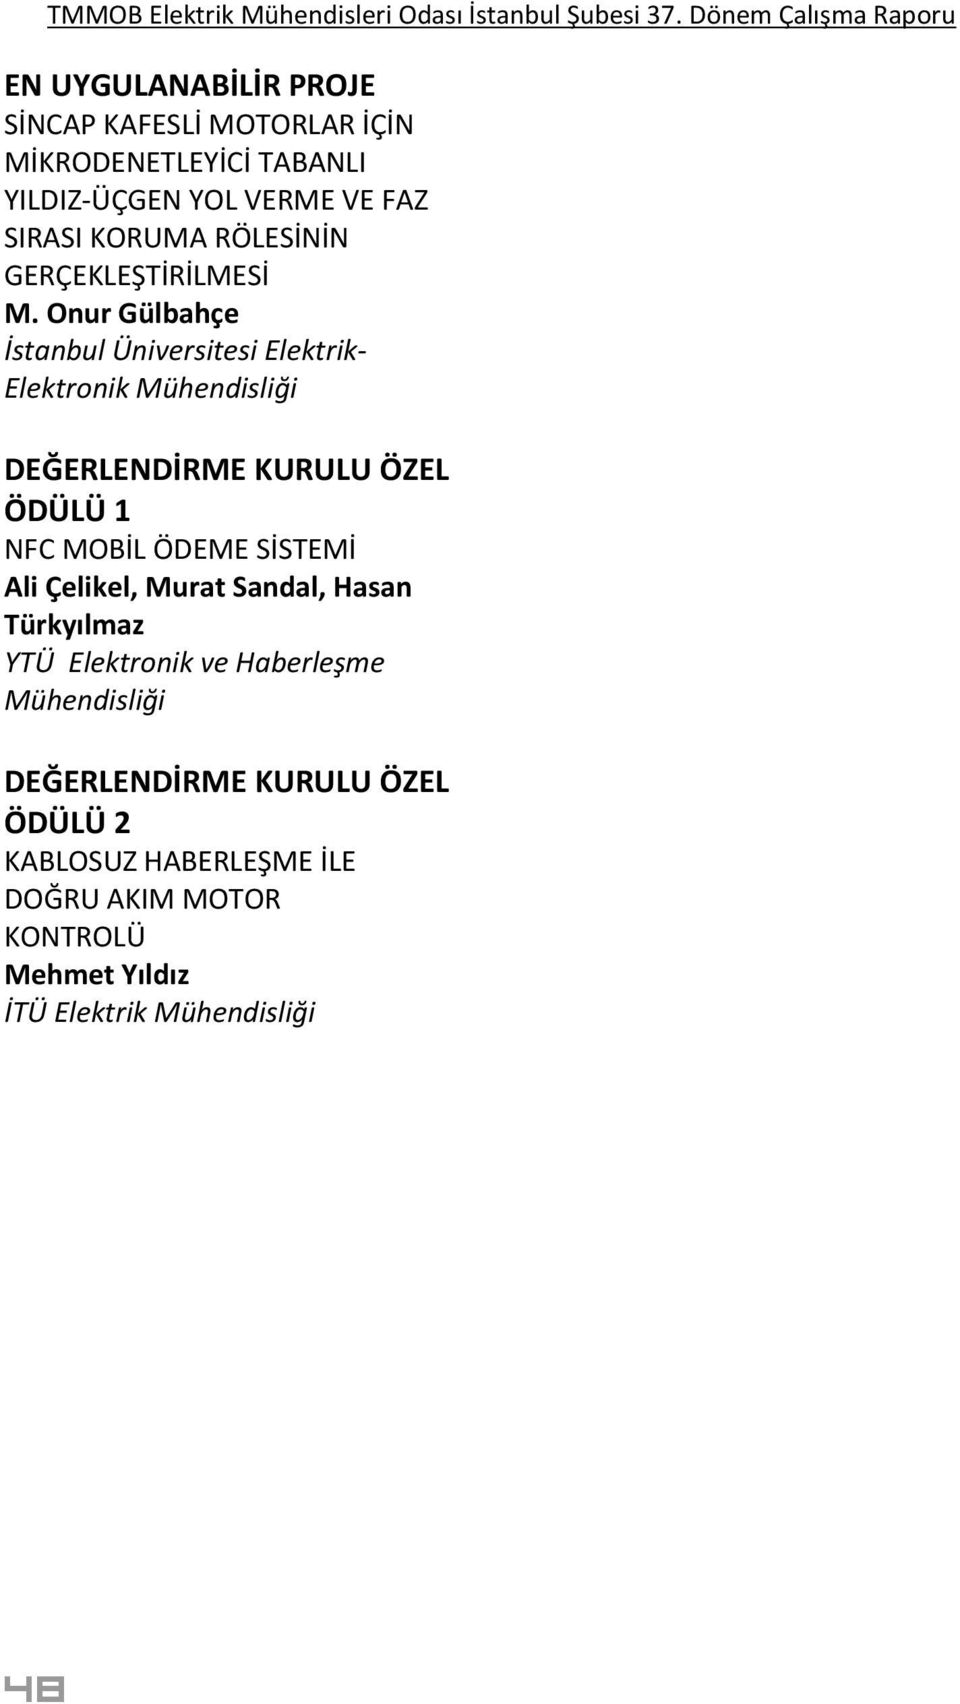 Onur Gülbahçe Elektrik- Elektronik Mühendisliği ÖDÜLÜ 1 NFC MOBİL ÖDEME SİSTEMİ Ali Çelikel, Murat